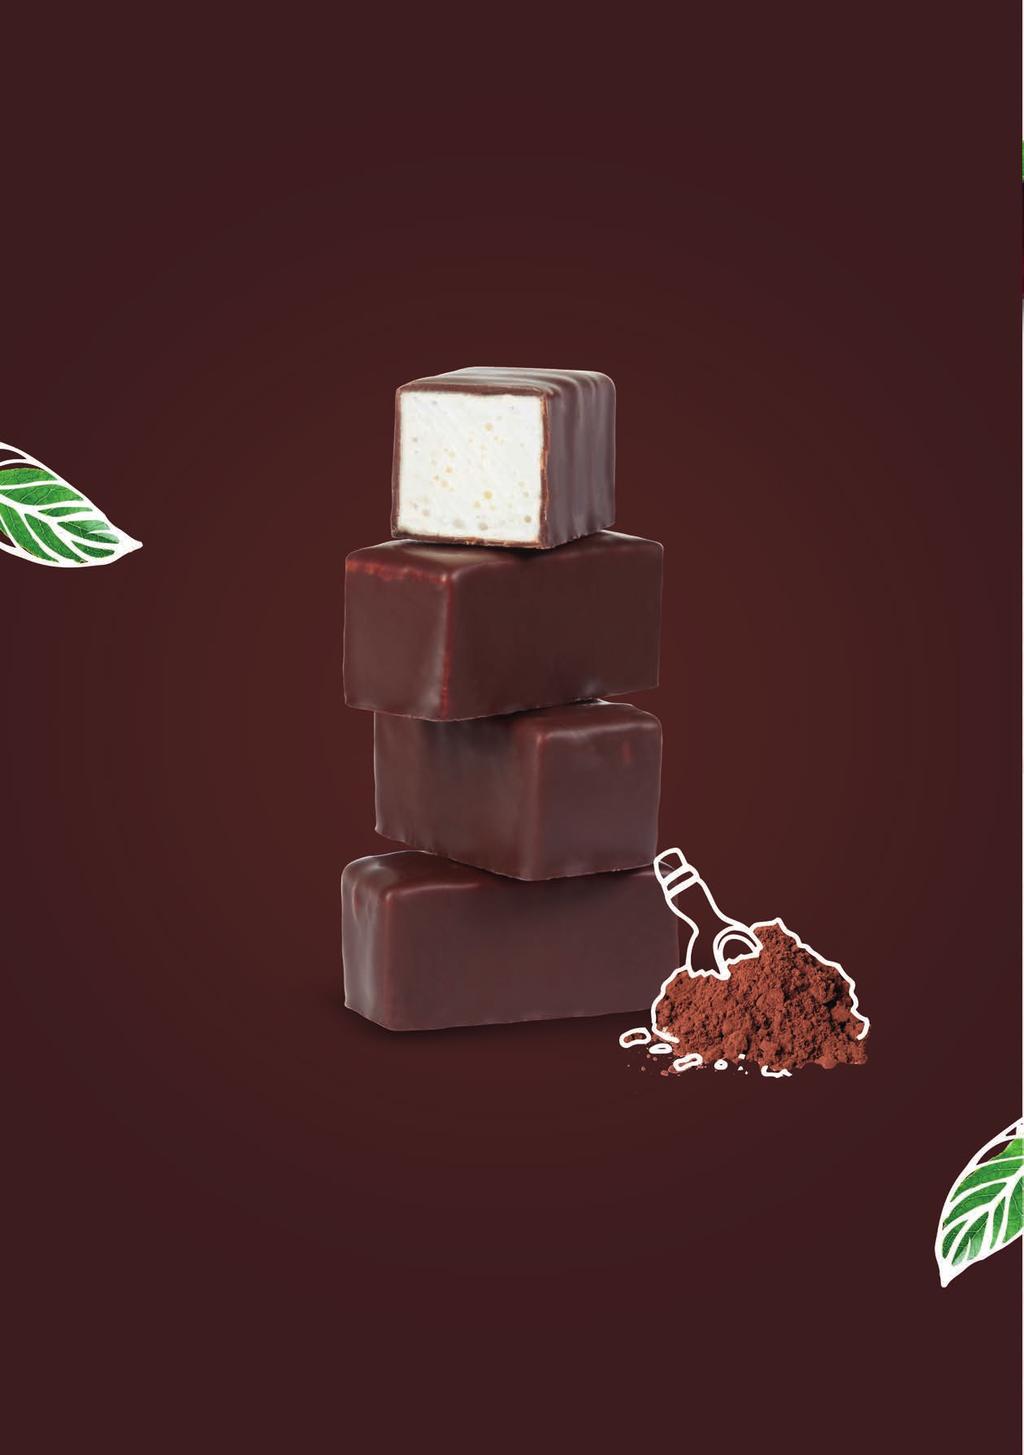 Produkty w prawdziwej czekoladzie Products covered in real chocolate Kuszące połączenie prawdziwej czekolady i przepysznego, delikatnego nadzienia w różnych wariantach smakowych, to wyjątkowa